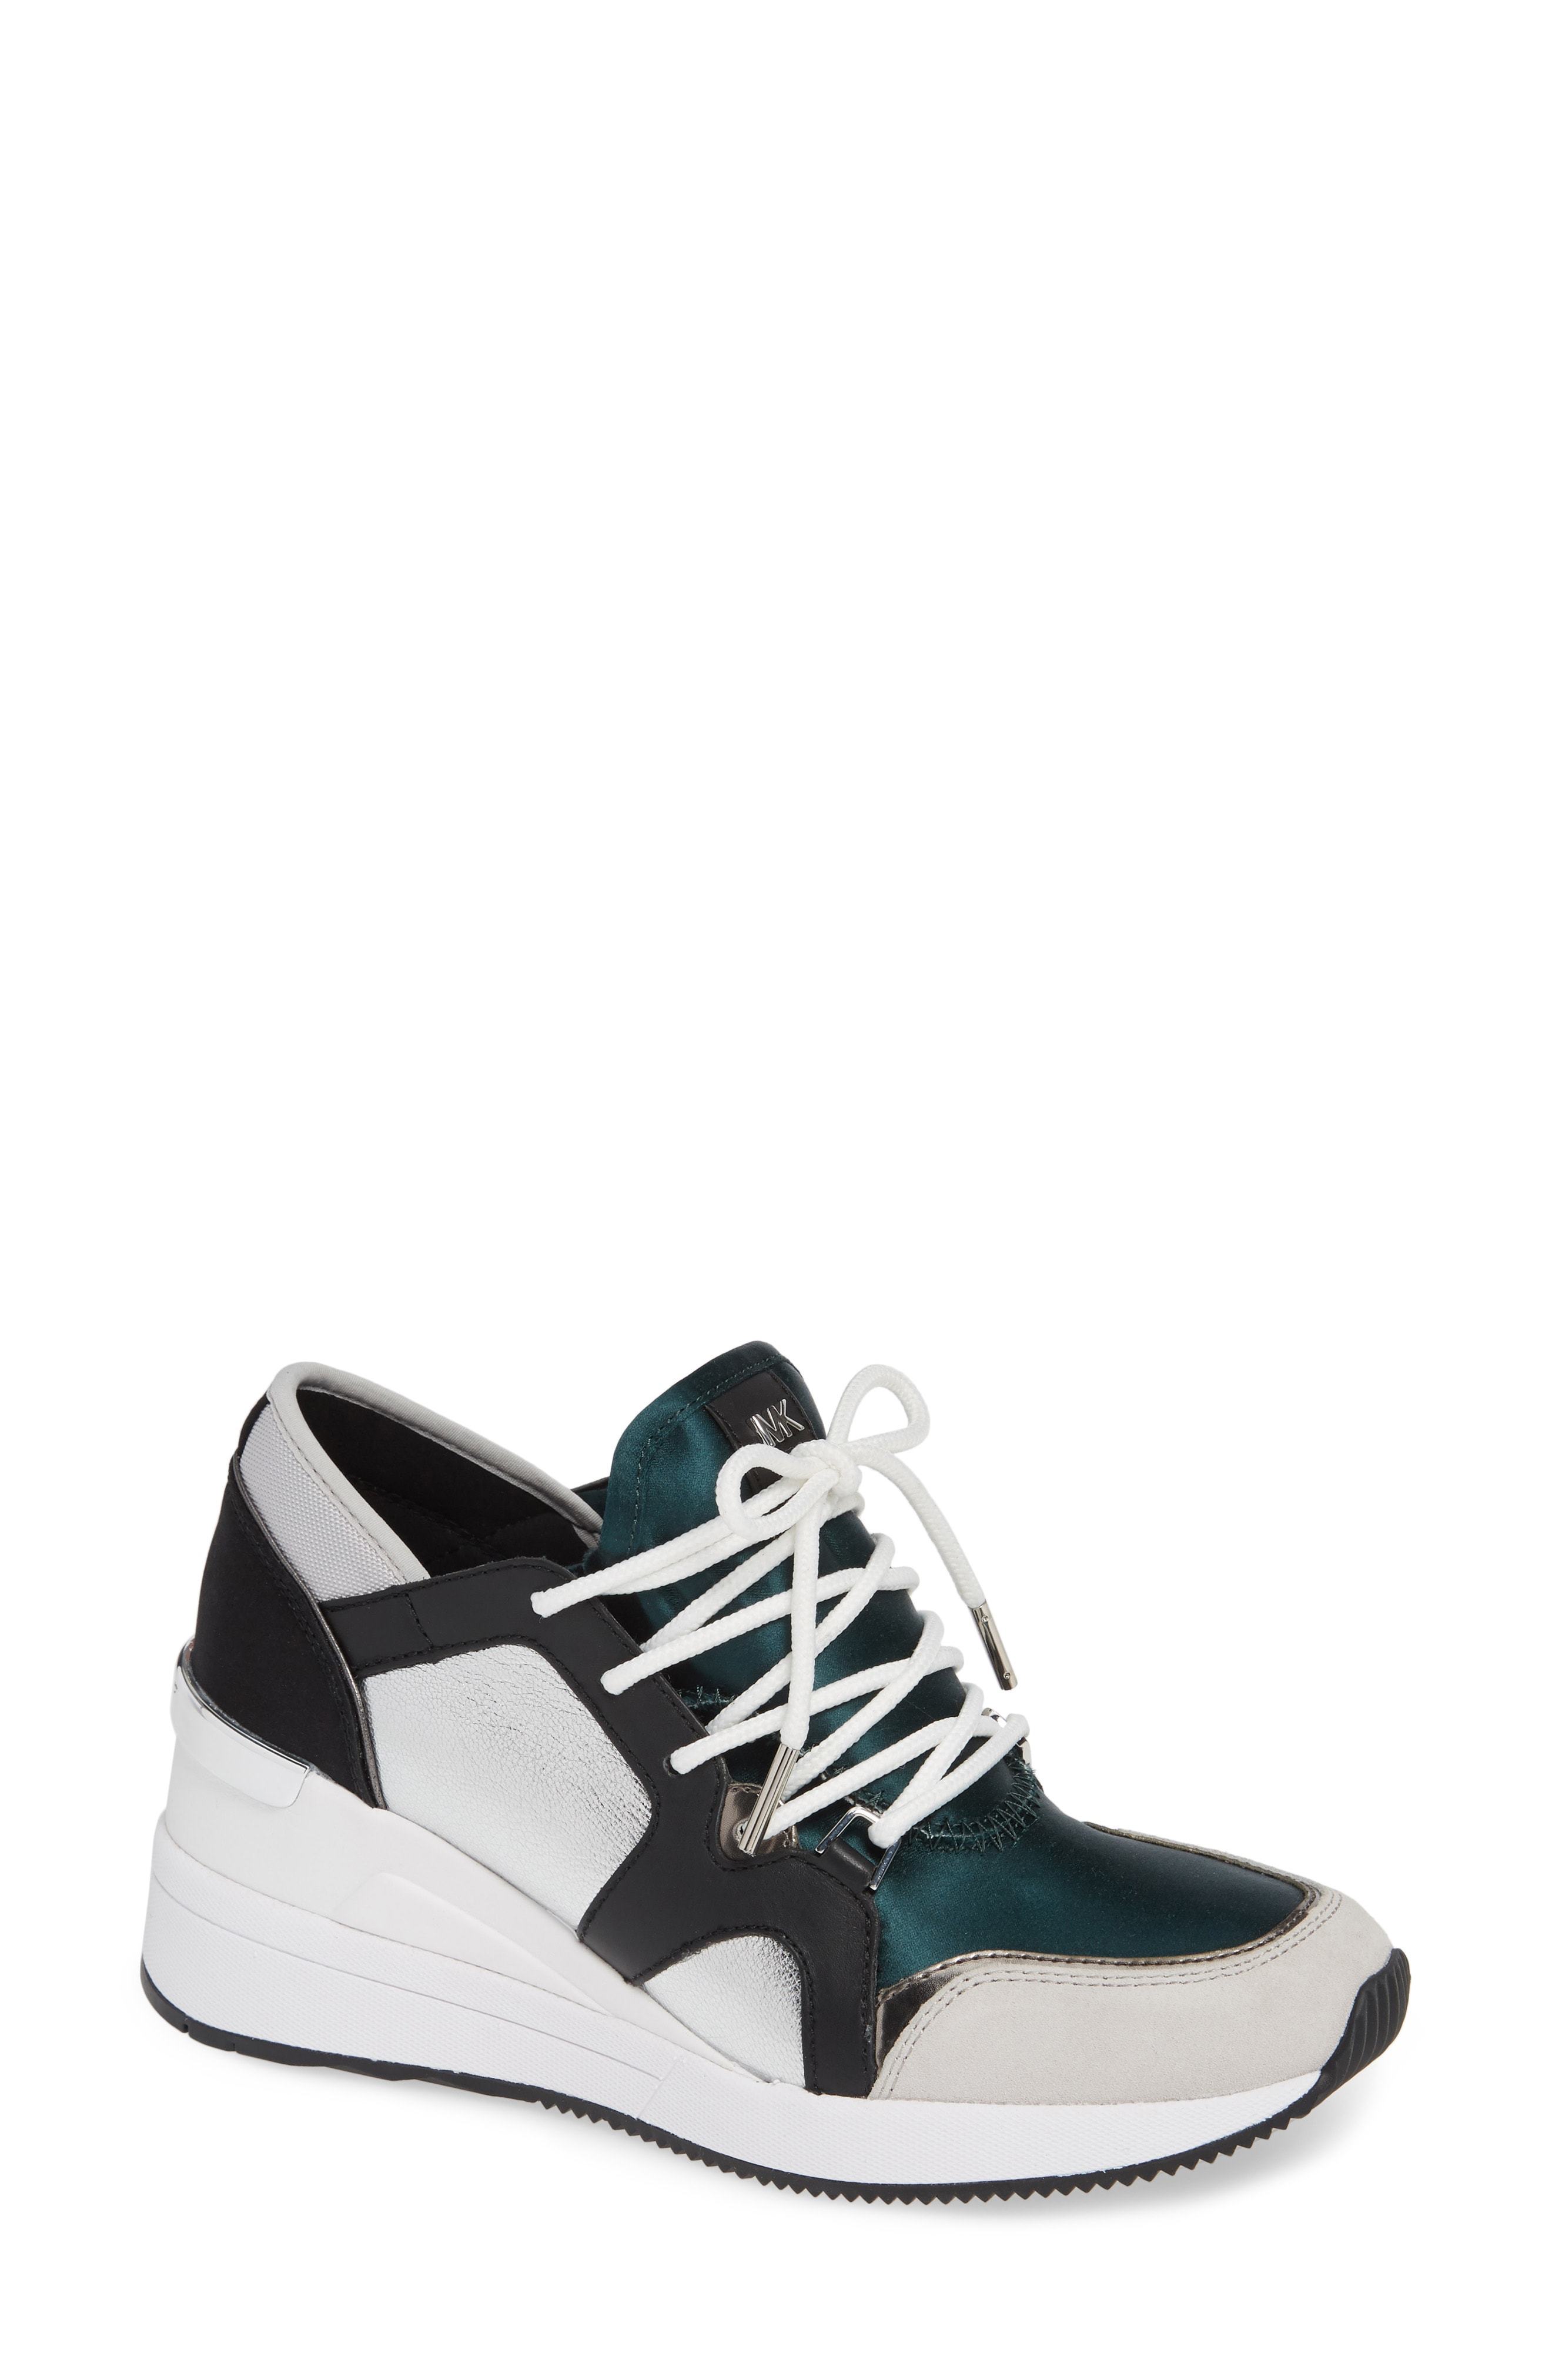 MICHAEL Kors Scout Trainer Wedge Sneaker, $57 | Nordstrom | Lookastic